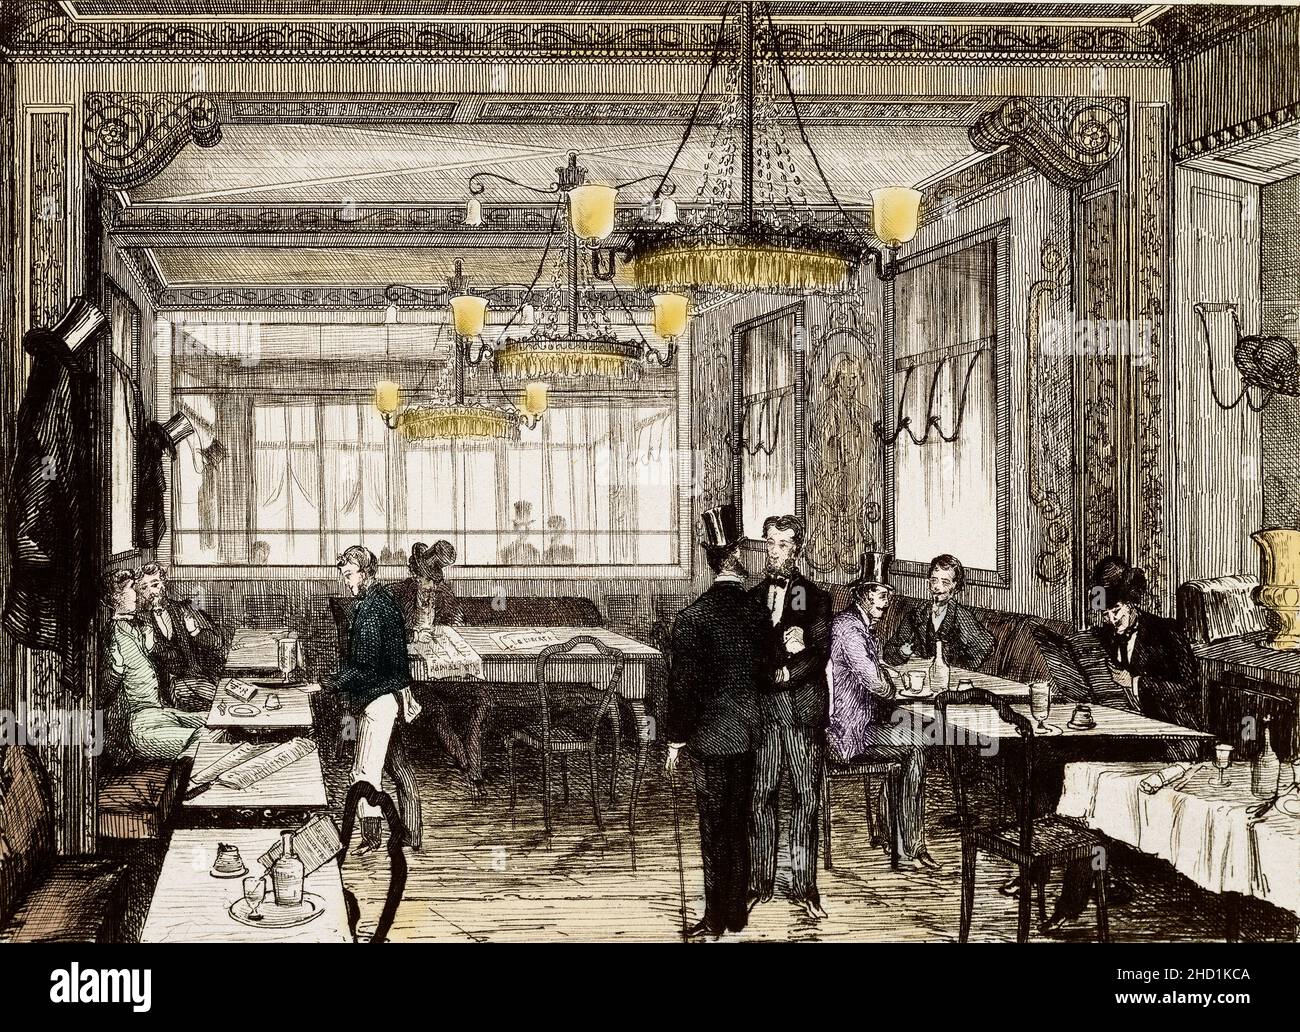 Vista de la cafetería Le Procope en la rue de l'Ancienne Comedie en París. Grabado del siglo 19th. Foto de stock